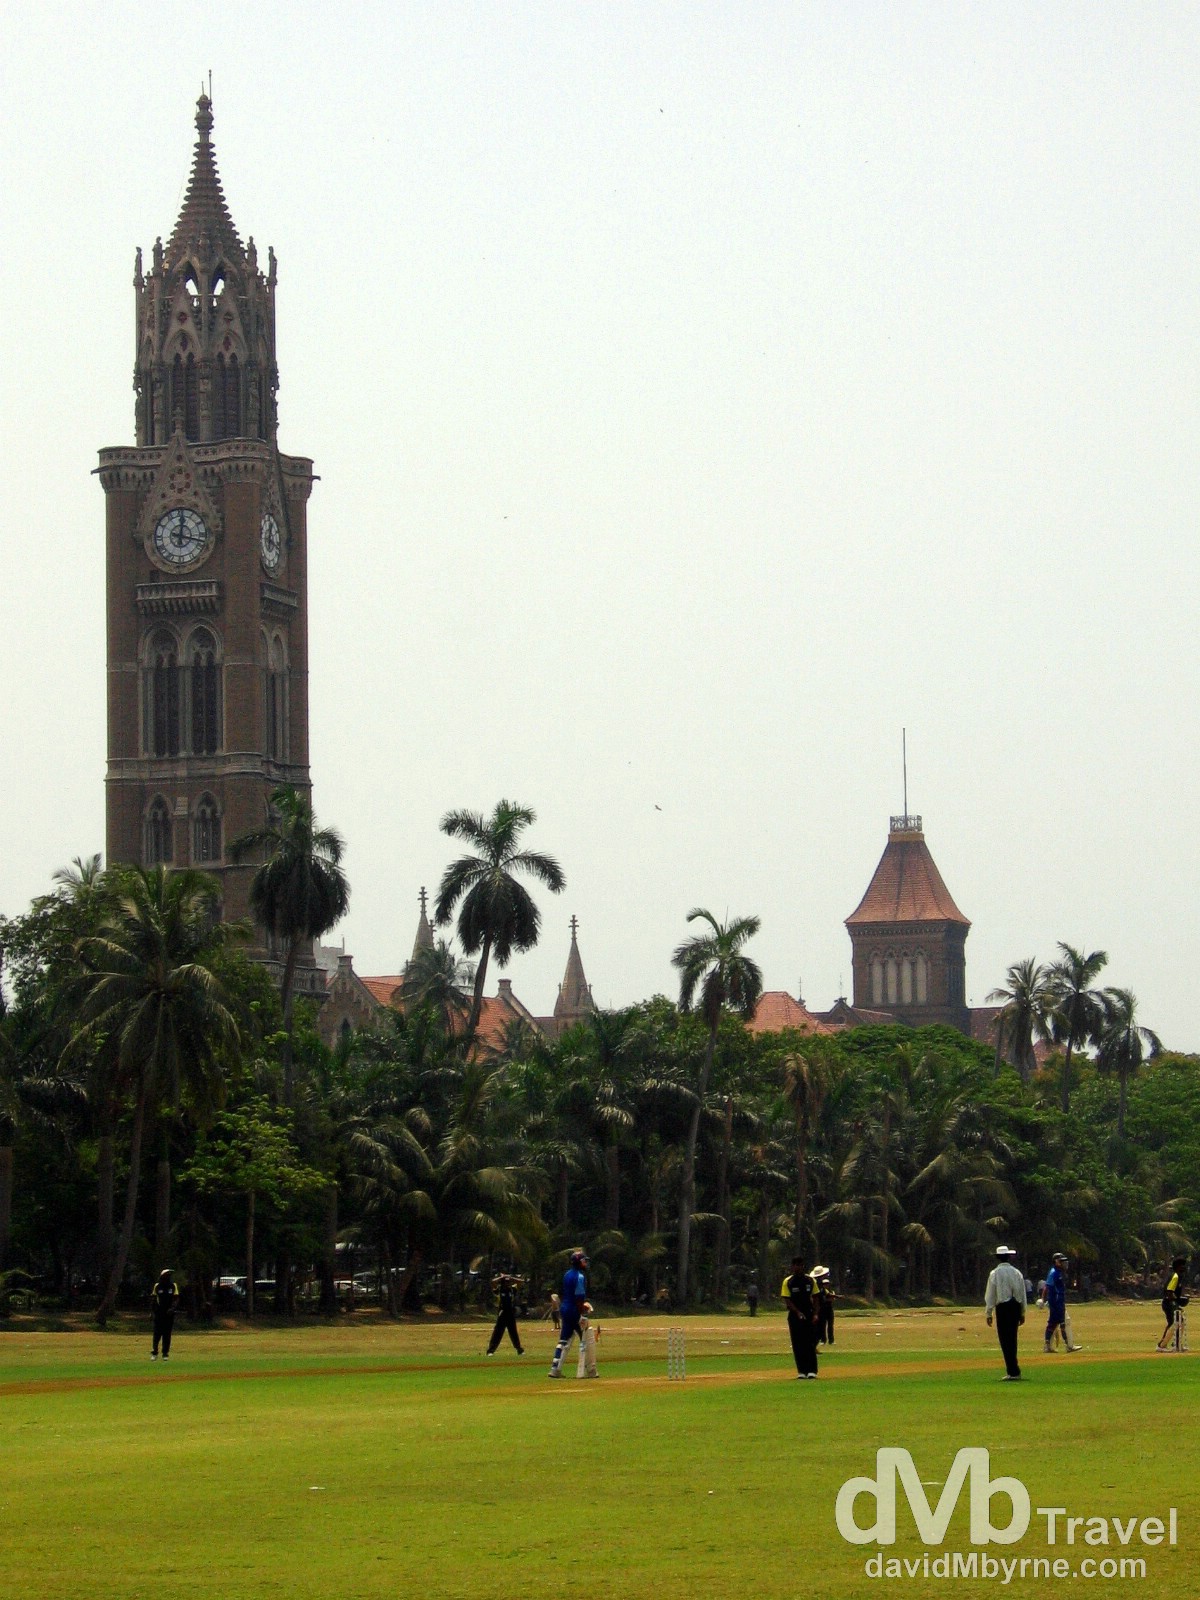 A game of cricket on the Oval Maidan in Mumbai/Bombay, Maharashtra, India. April 4, 2008.